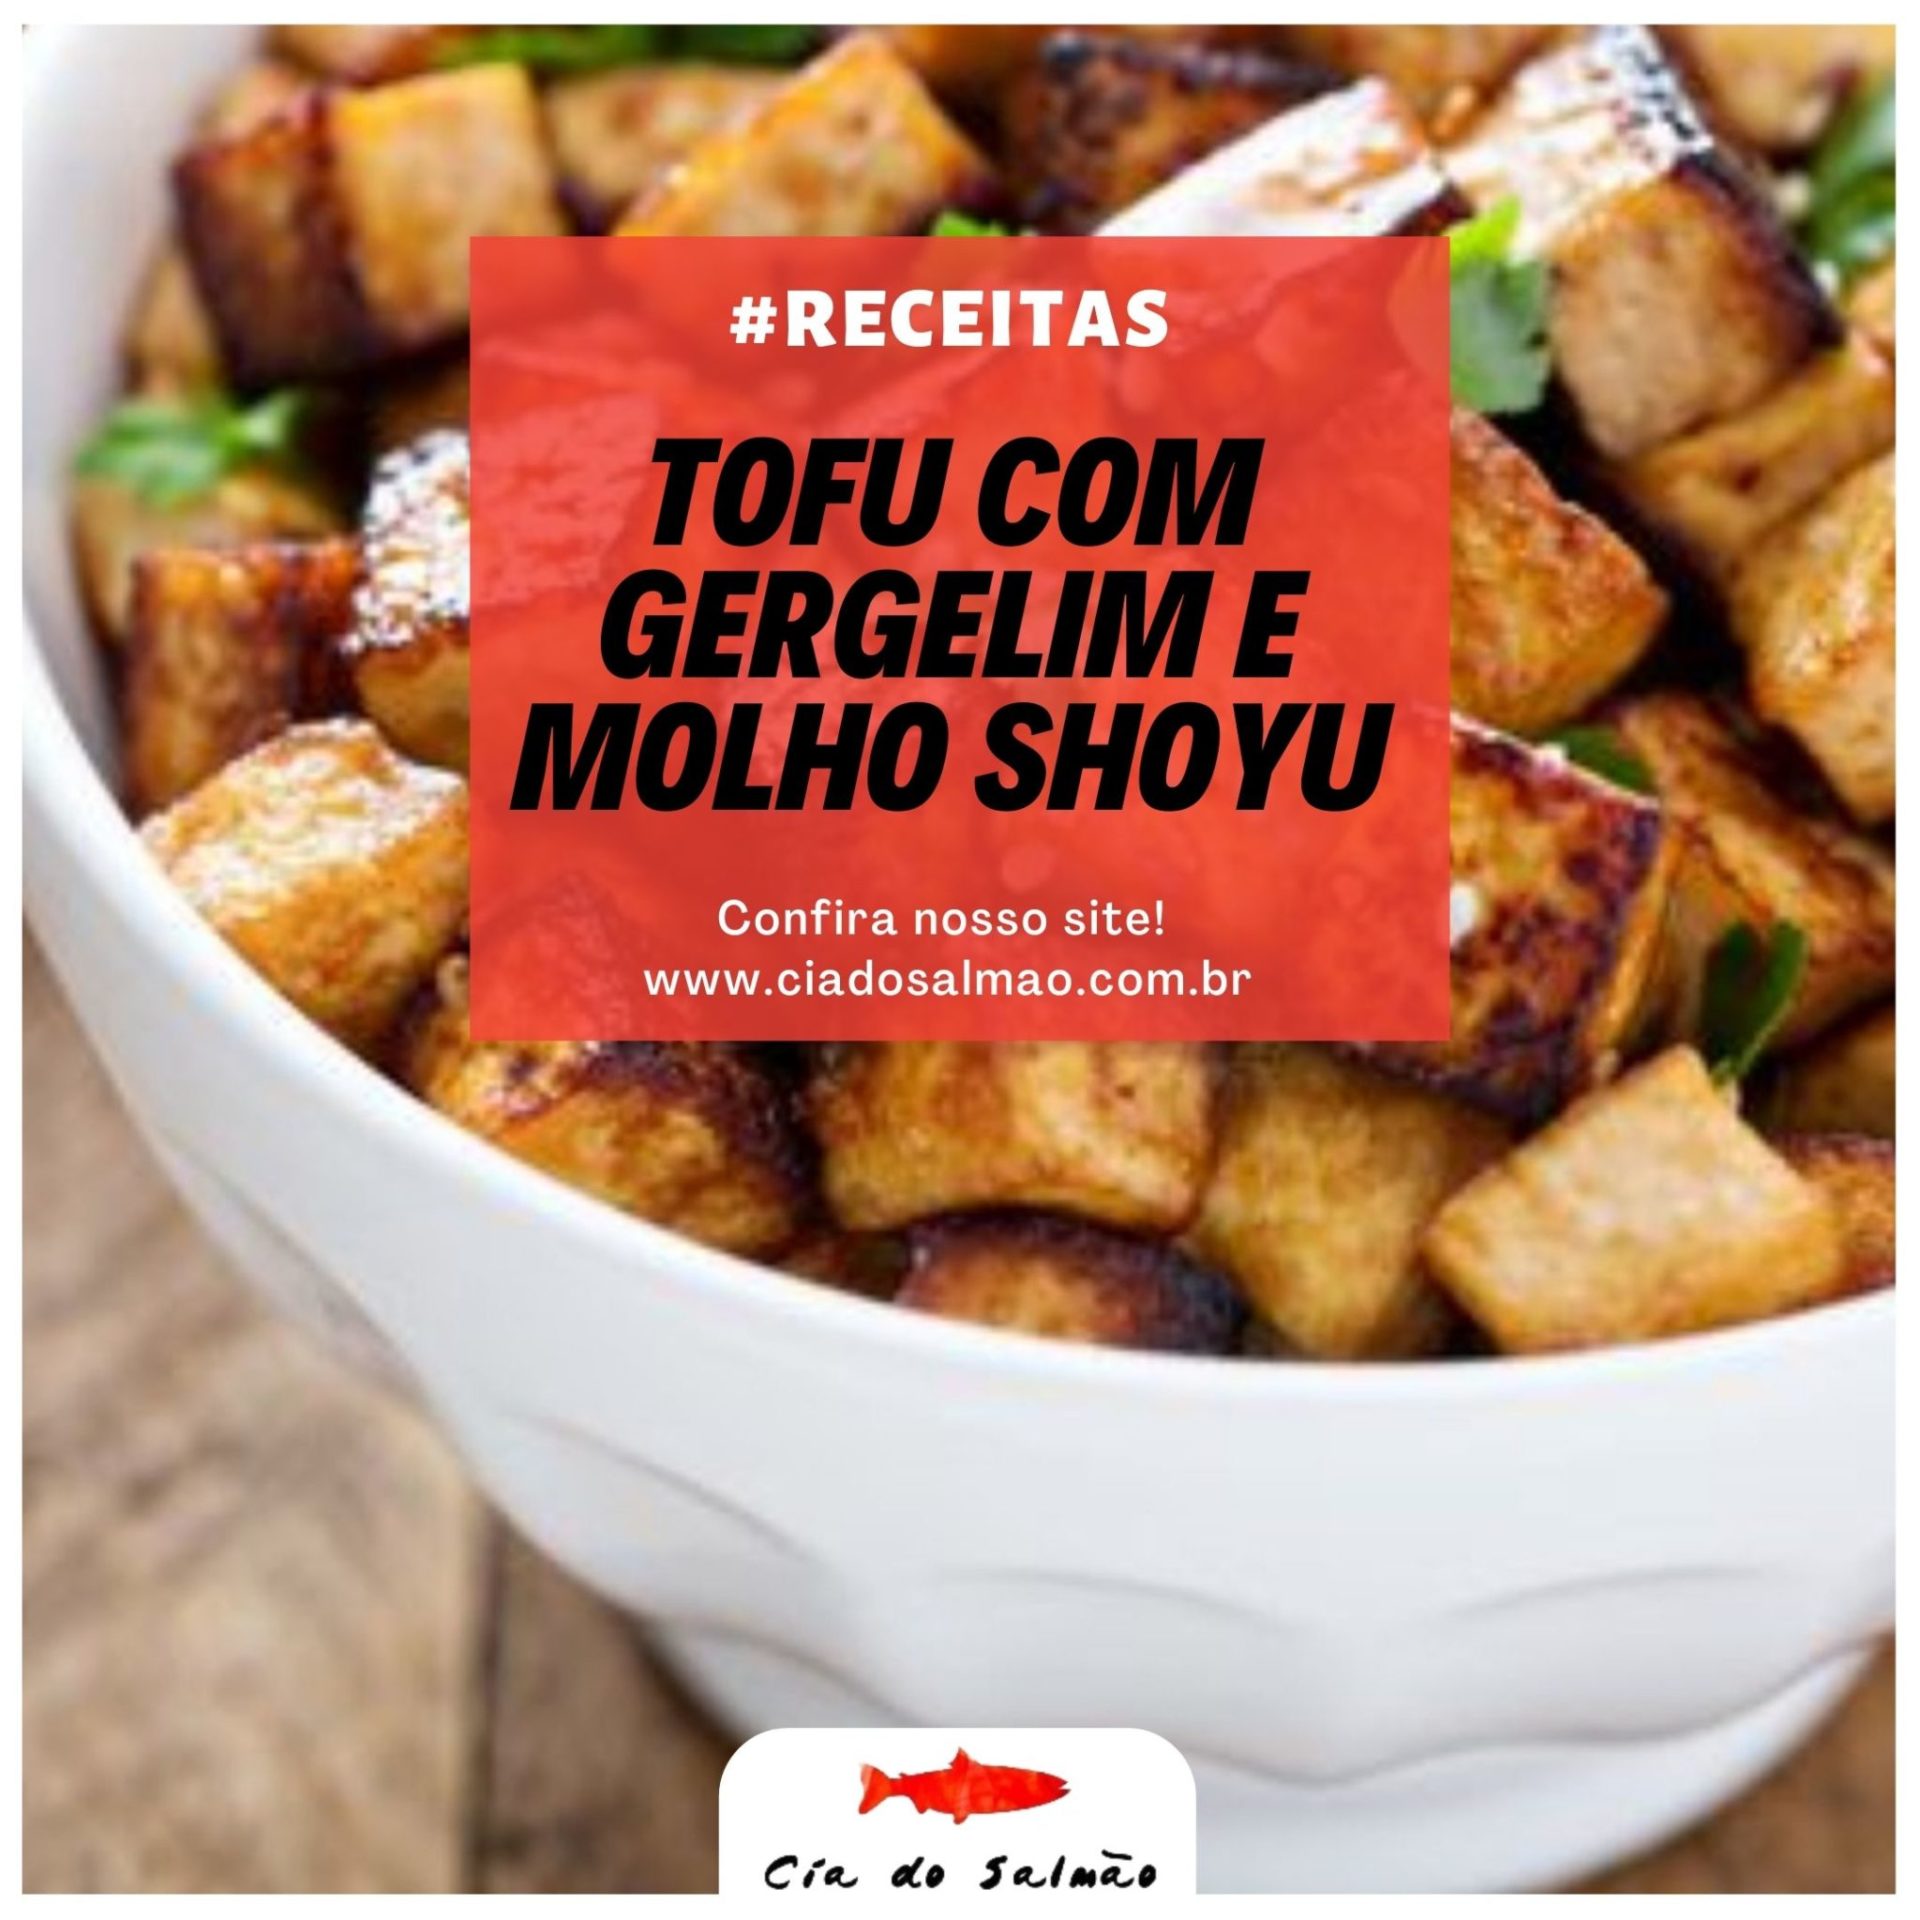 Tofu com Gergelim e molho shoyu